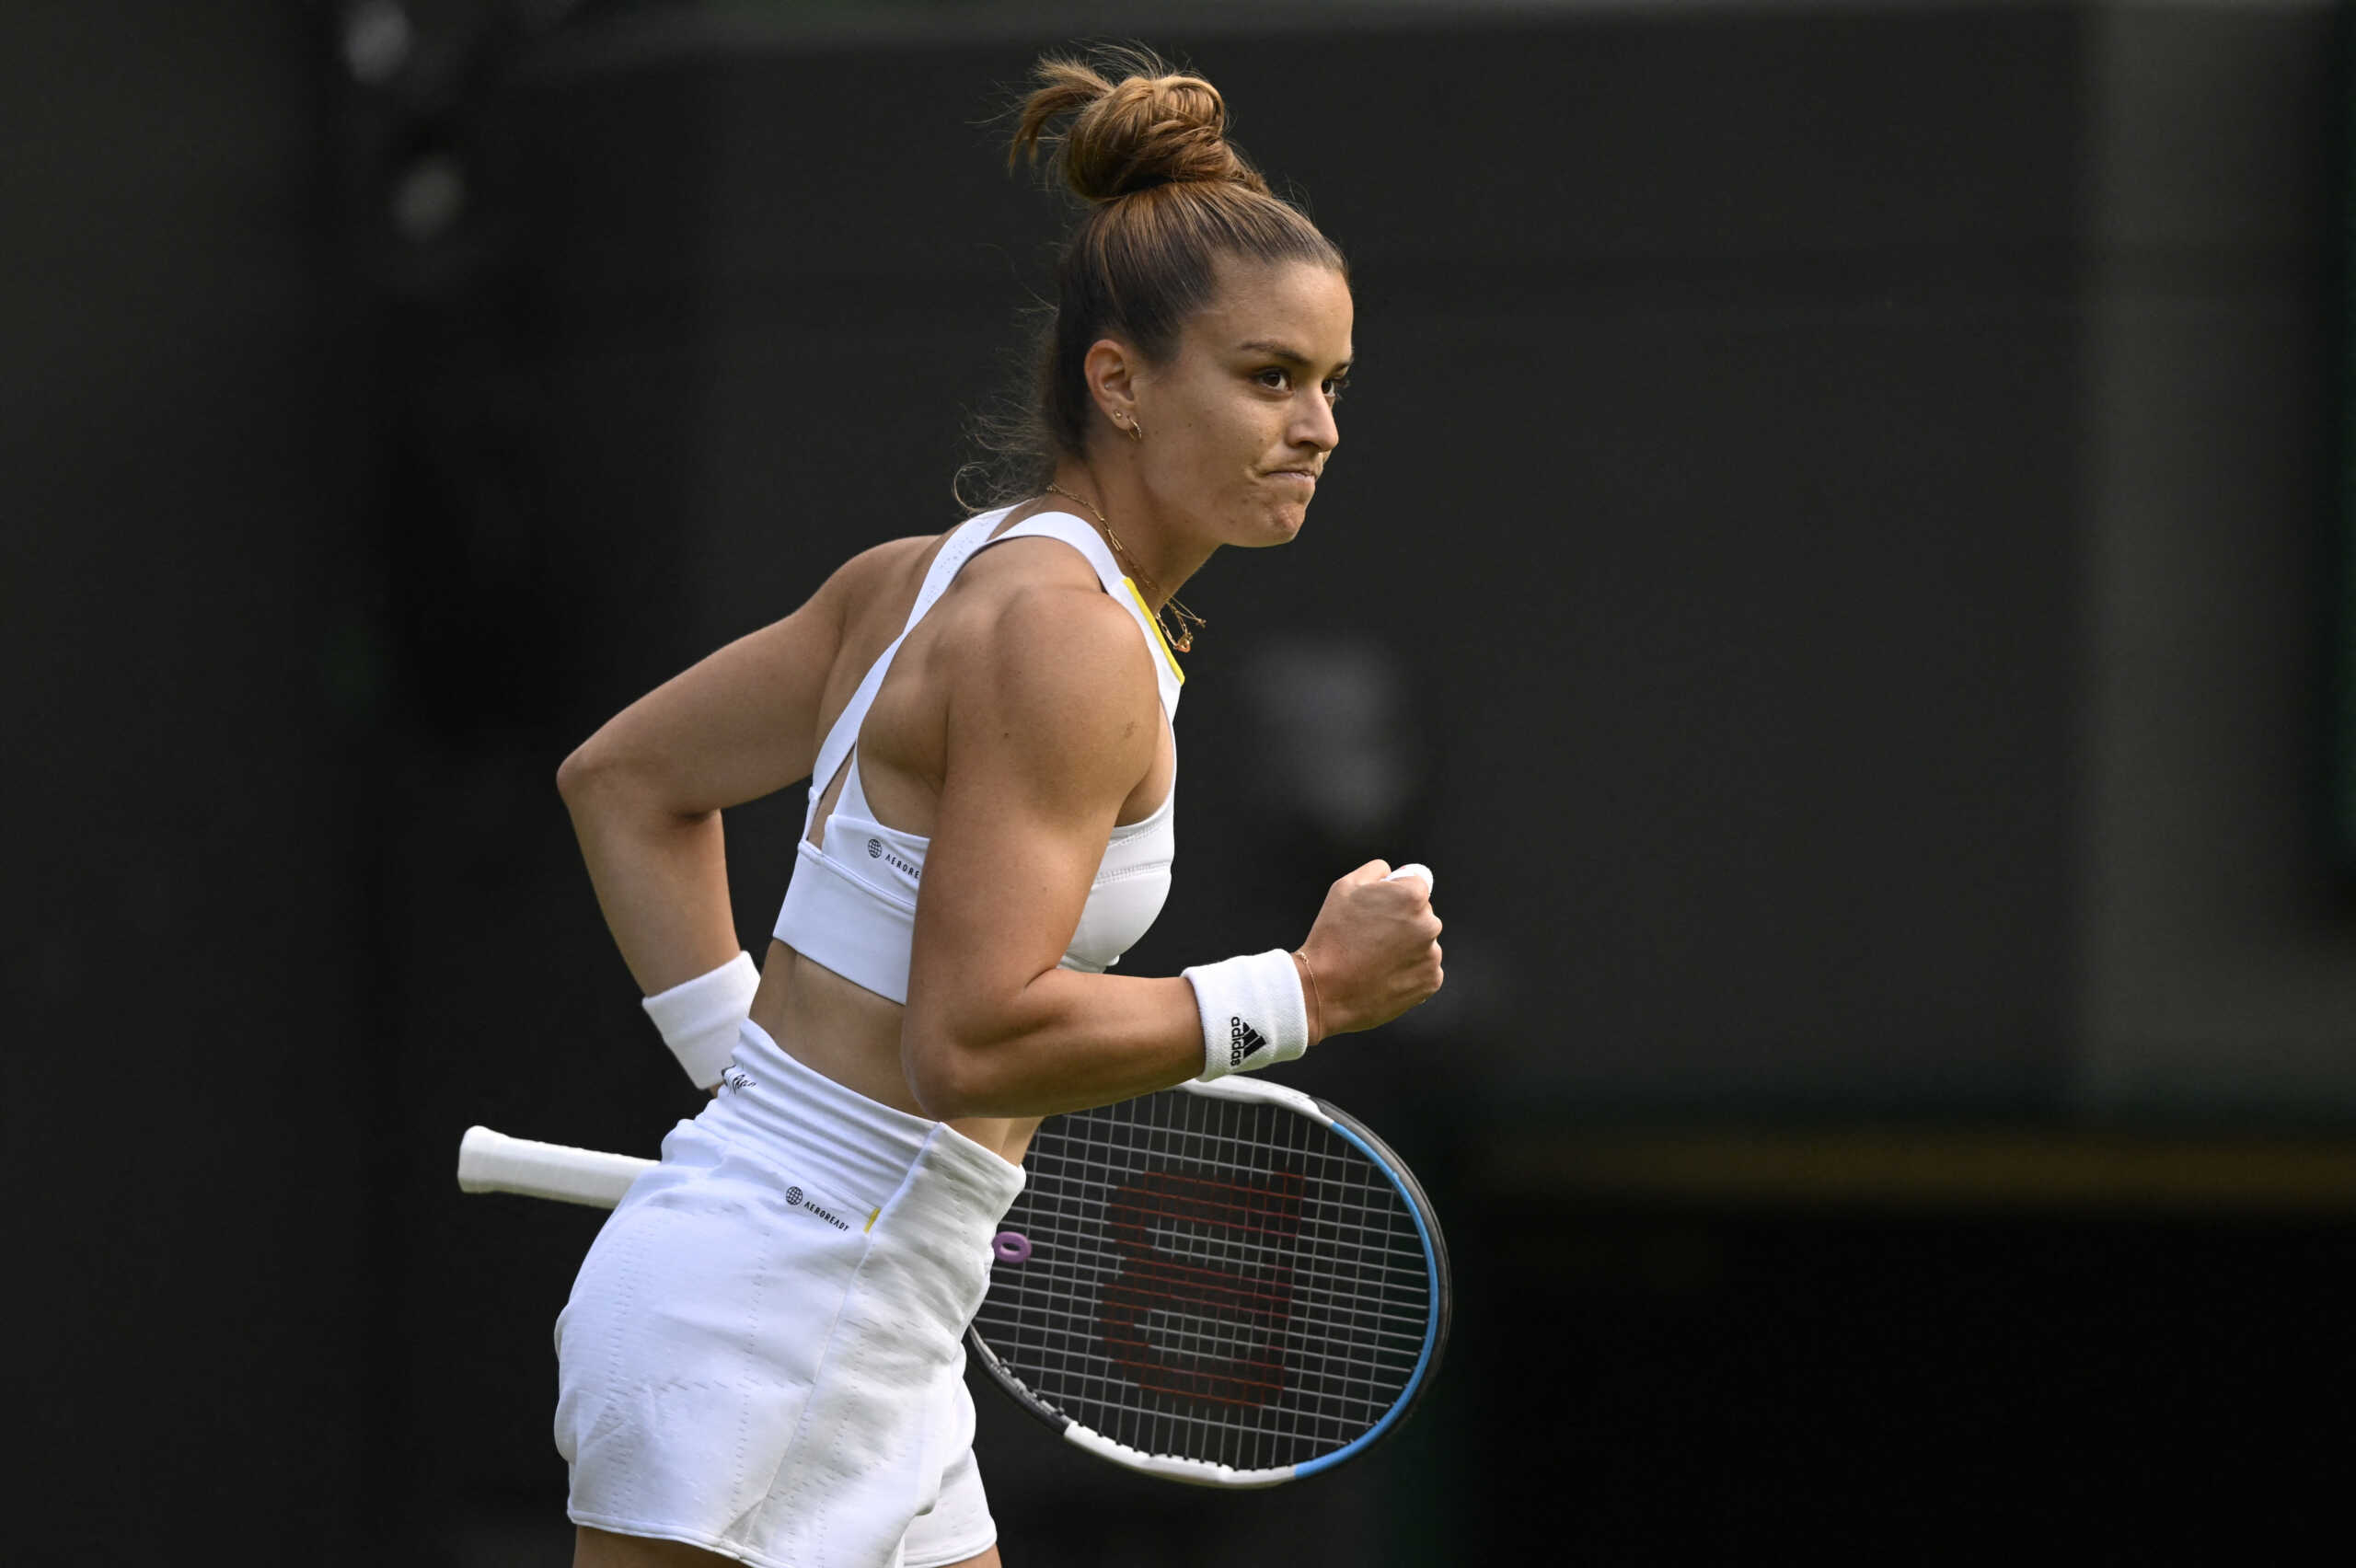 Μαρία Σάκκαρη – Τατιάνα Μαρία: Τι ώρα είναι ο αγώνας για τον τρίτο γύρο του Wimbledon